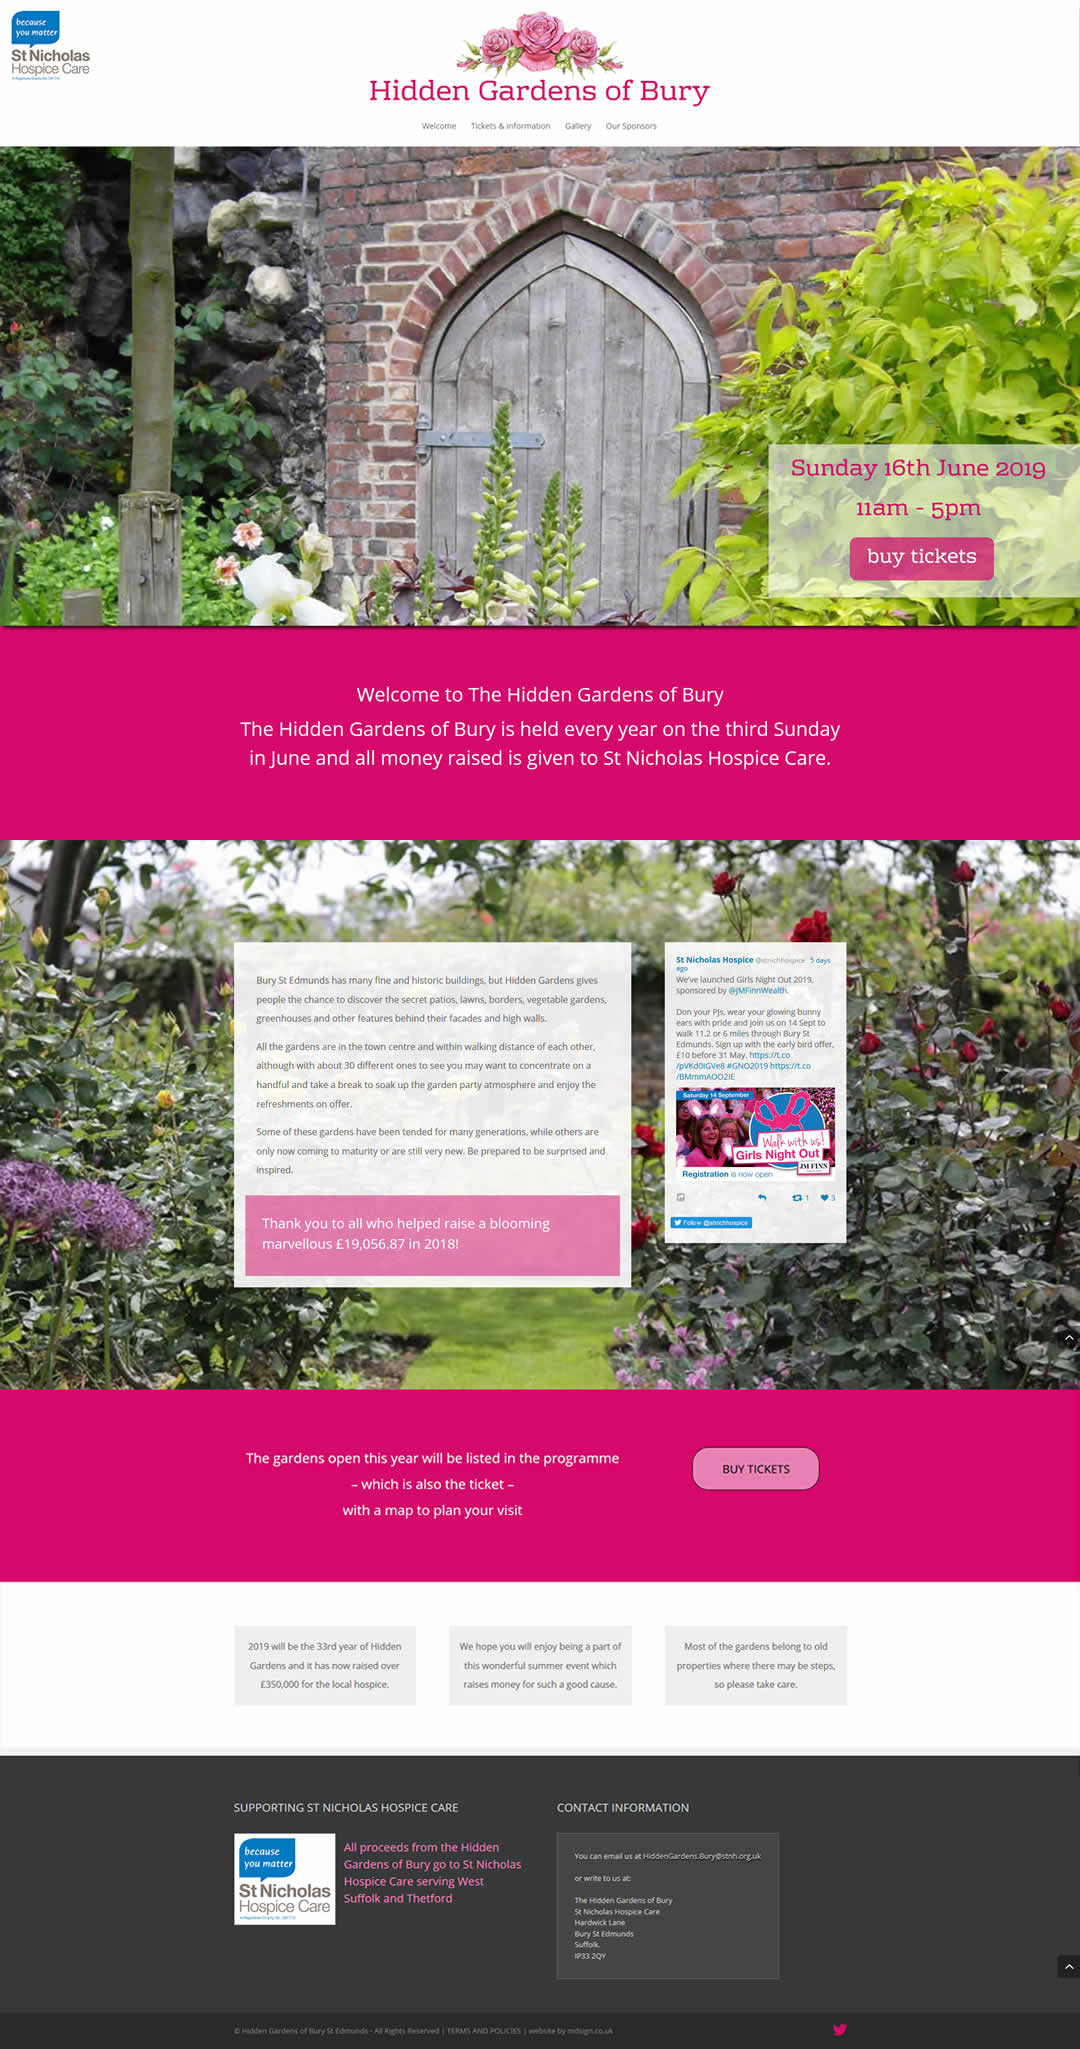 Hidden Gardens of Bury website design by mdsign